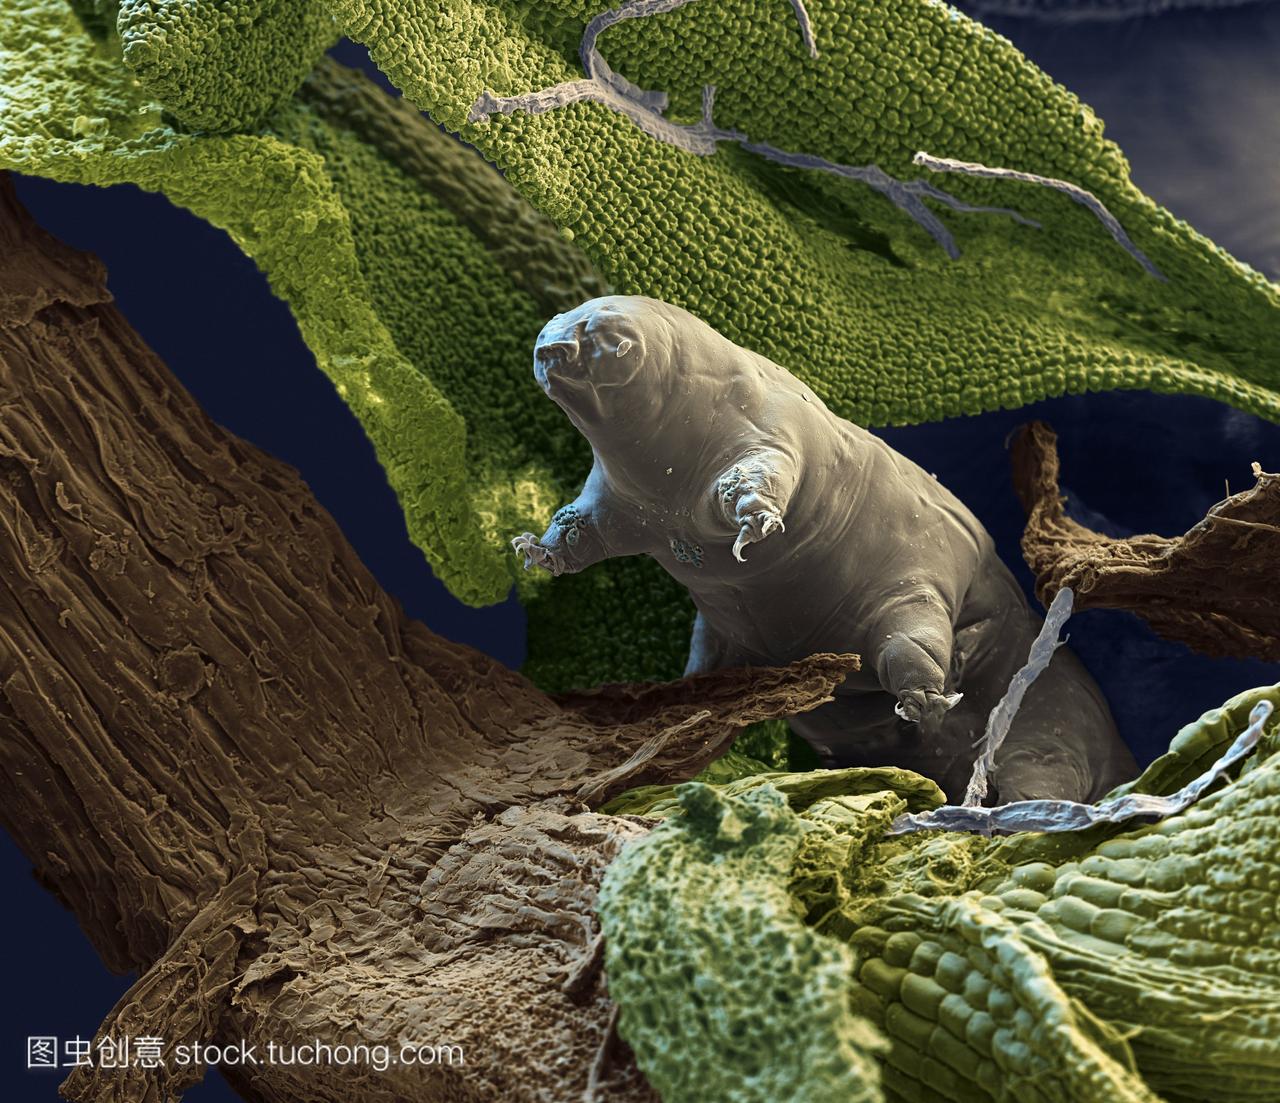 水熊Macrobiotus智人在苔藓。彩色扫描电子显